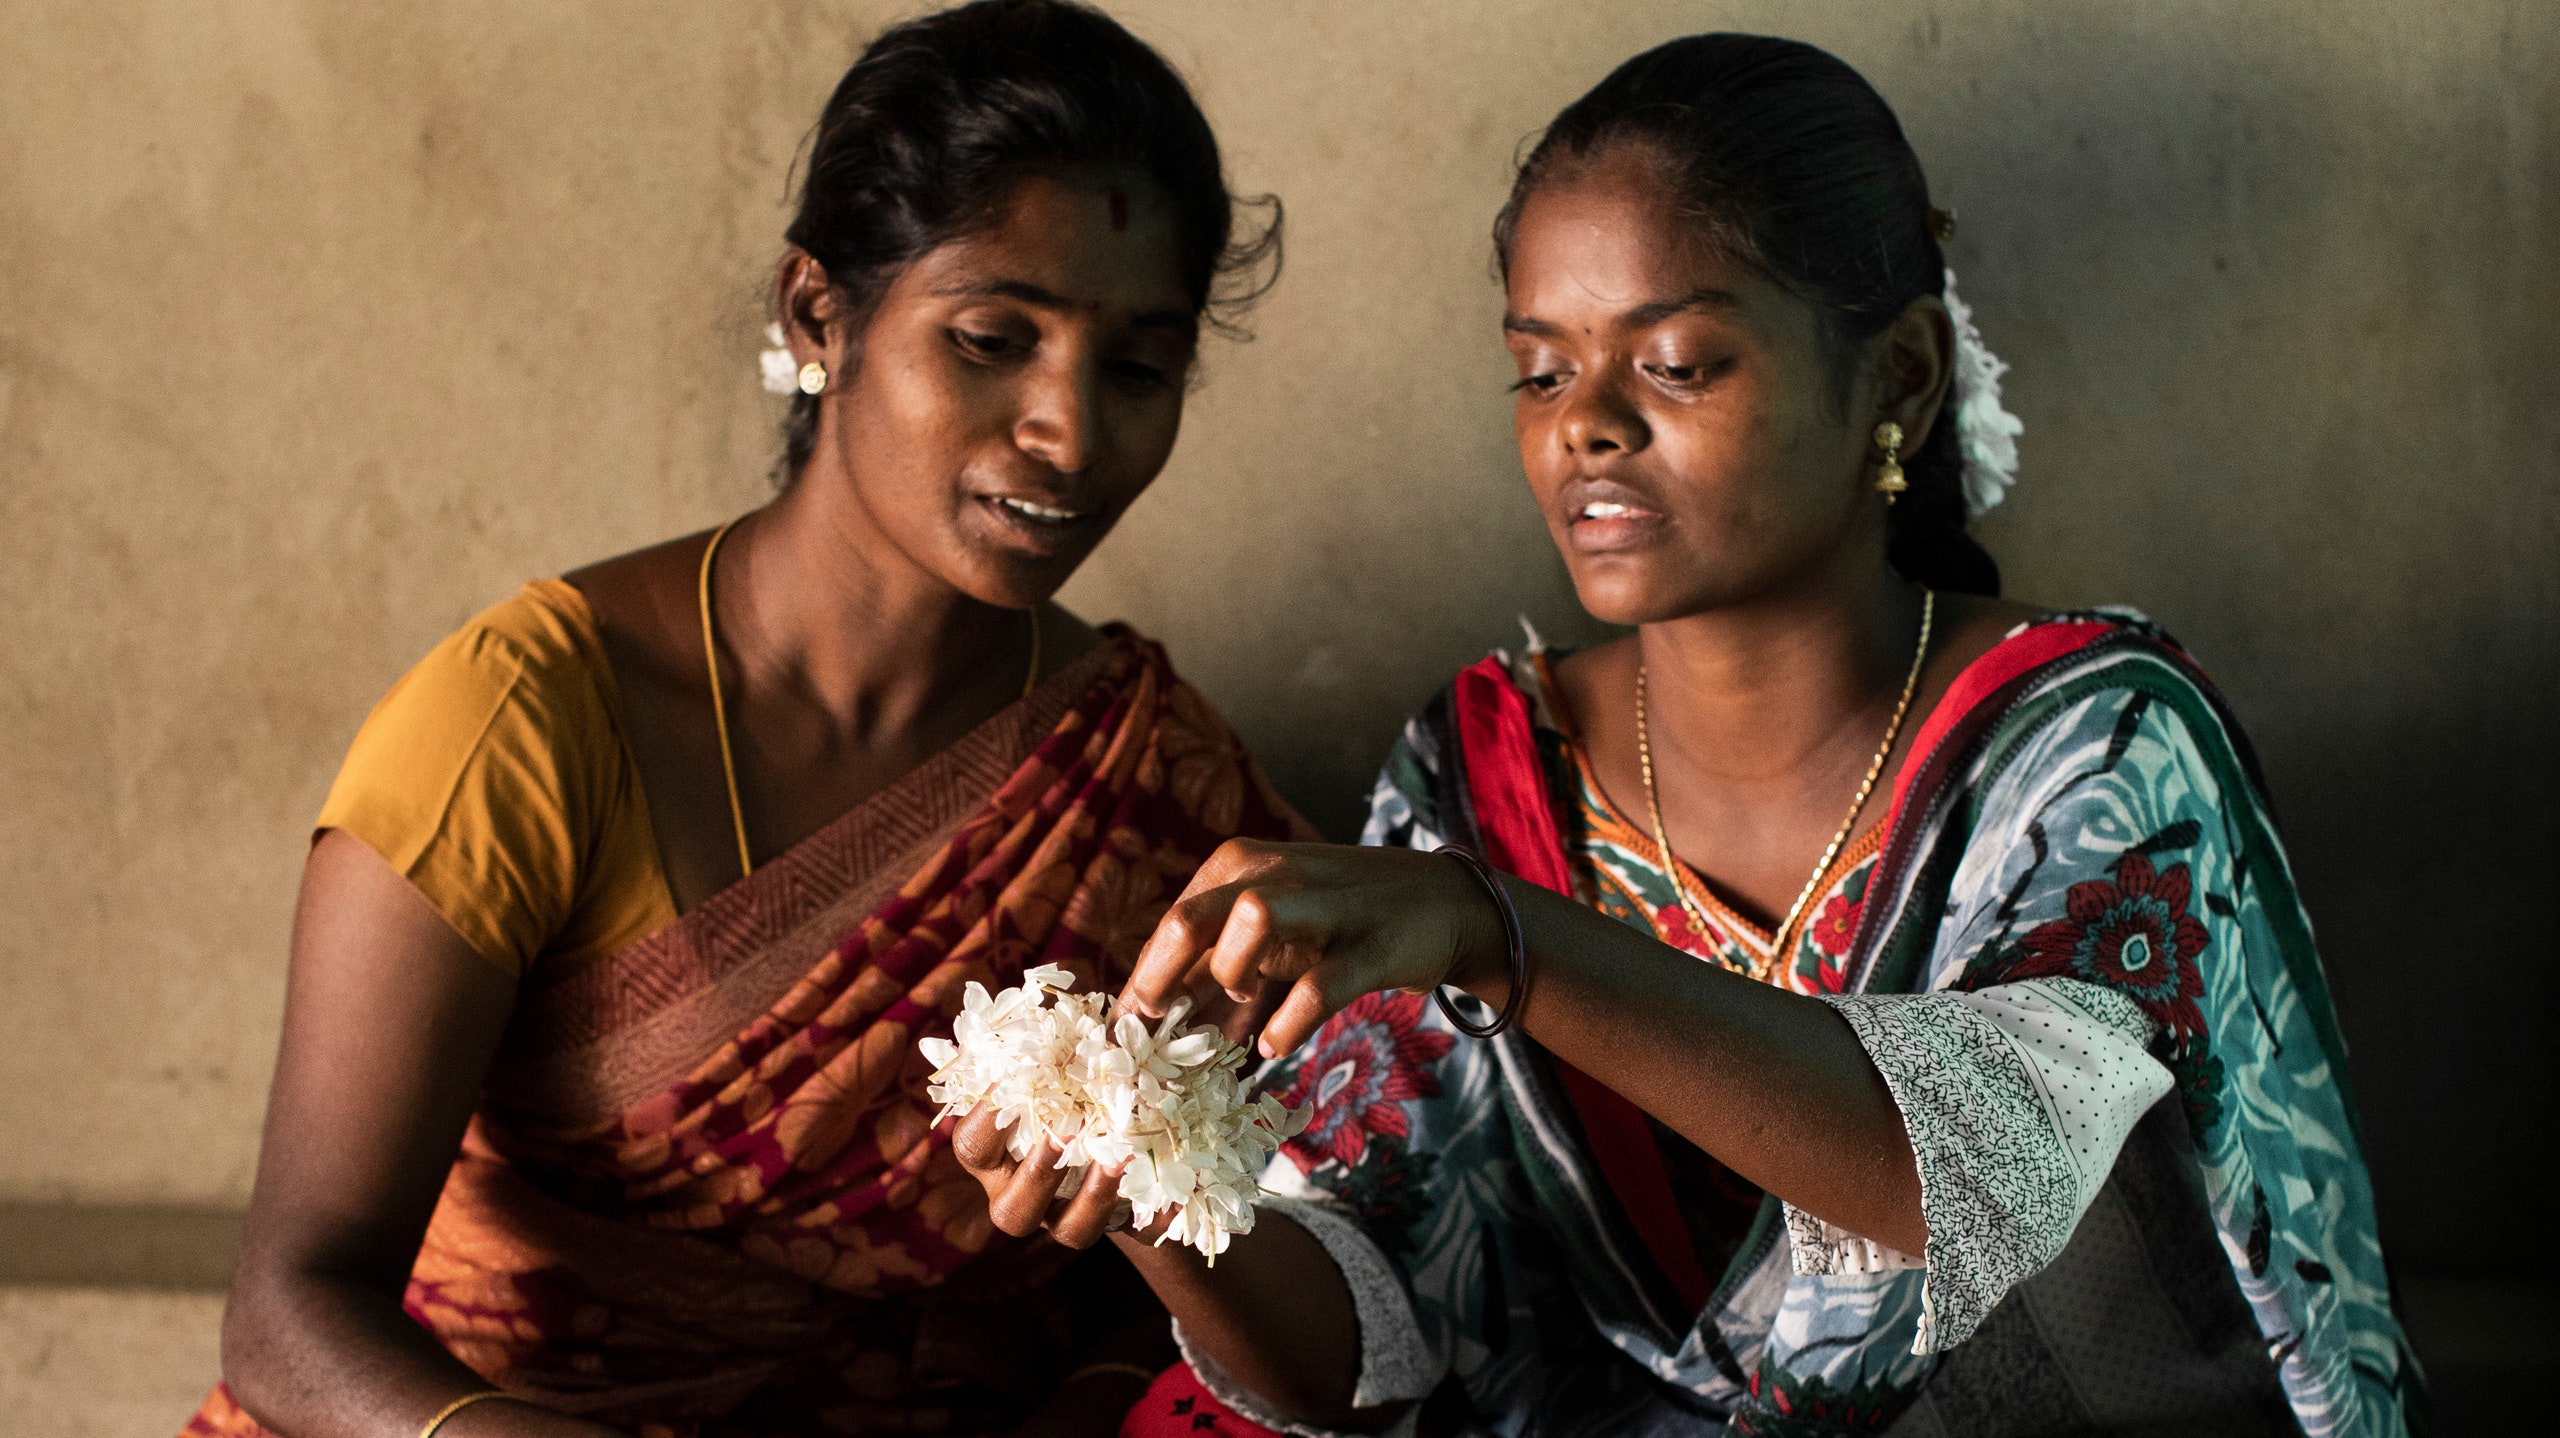 Жасмин для ароматов Bvlgari будет выращен на 100 семейных фермах в Индии